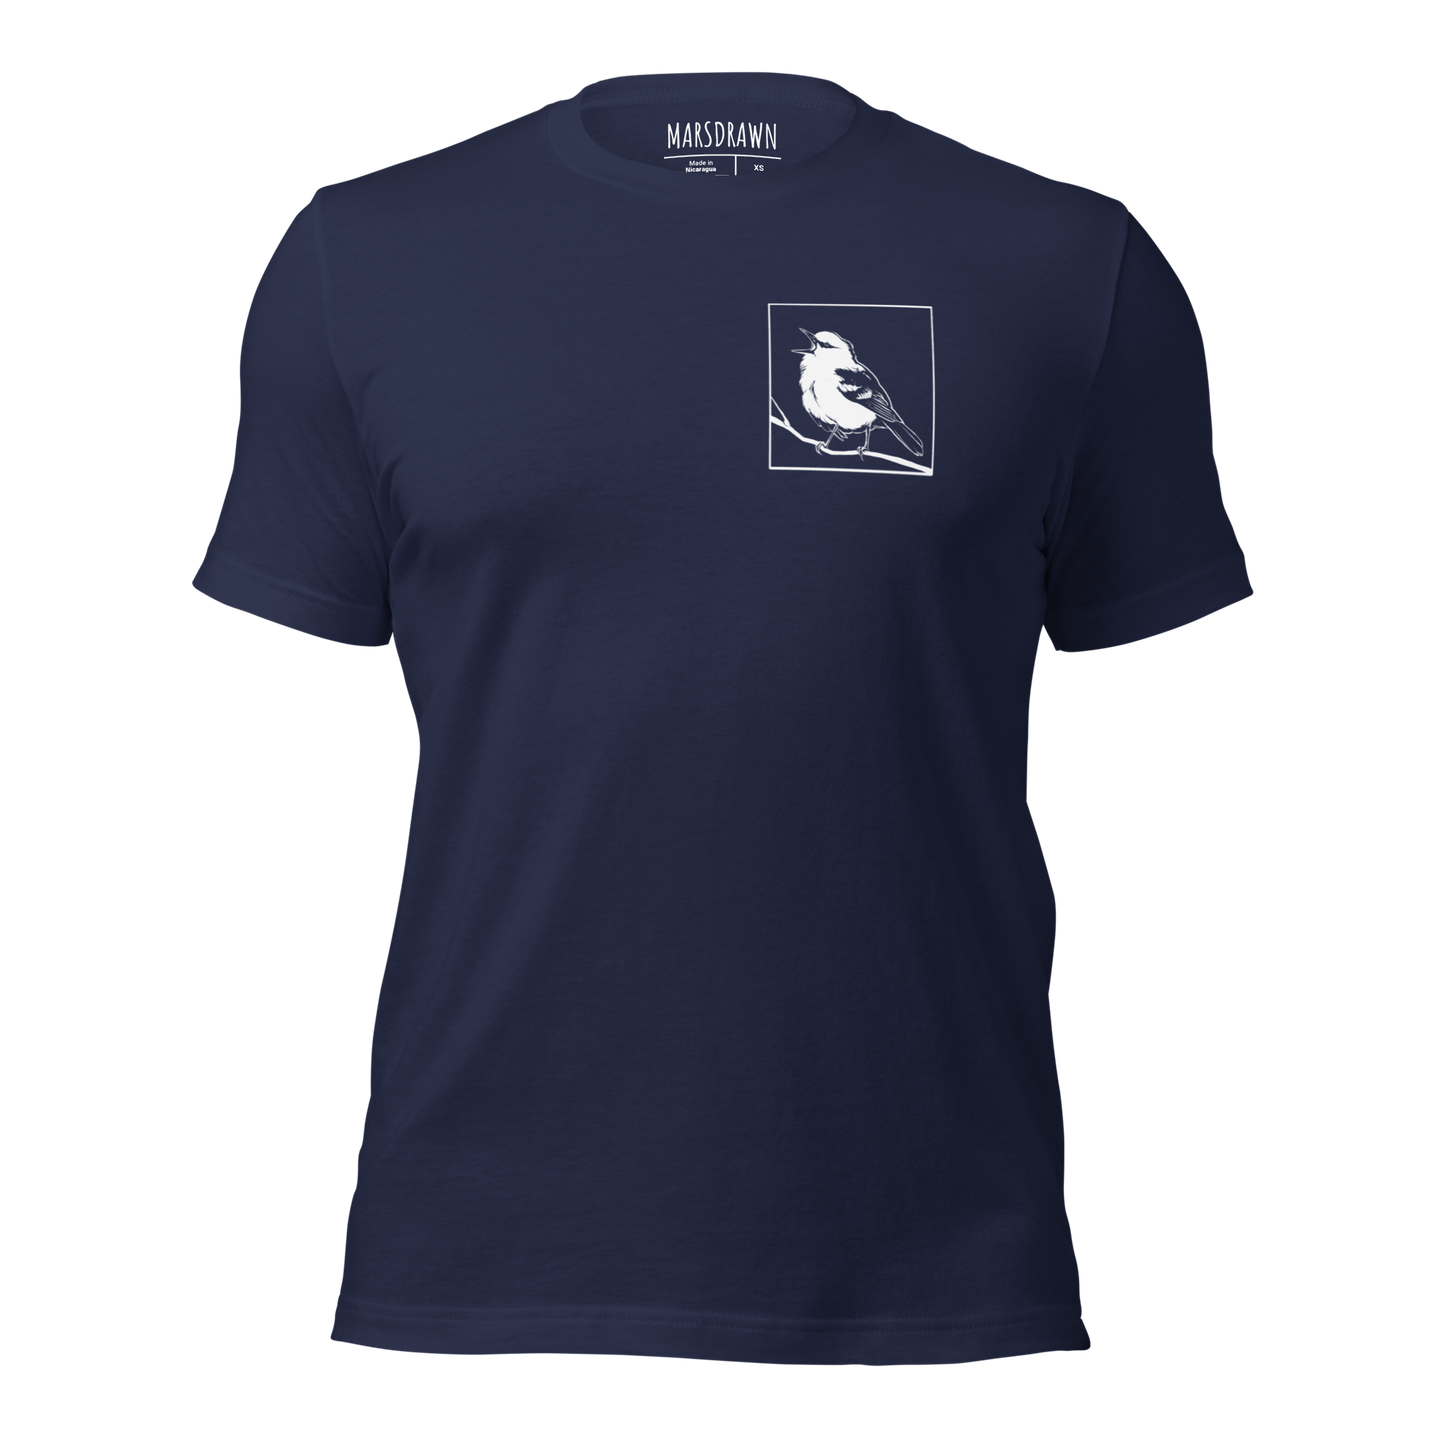 Birding t-shirt